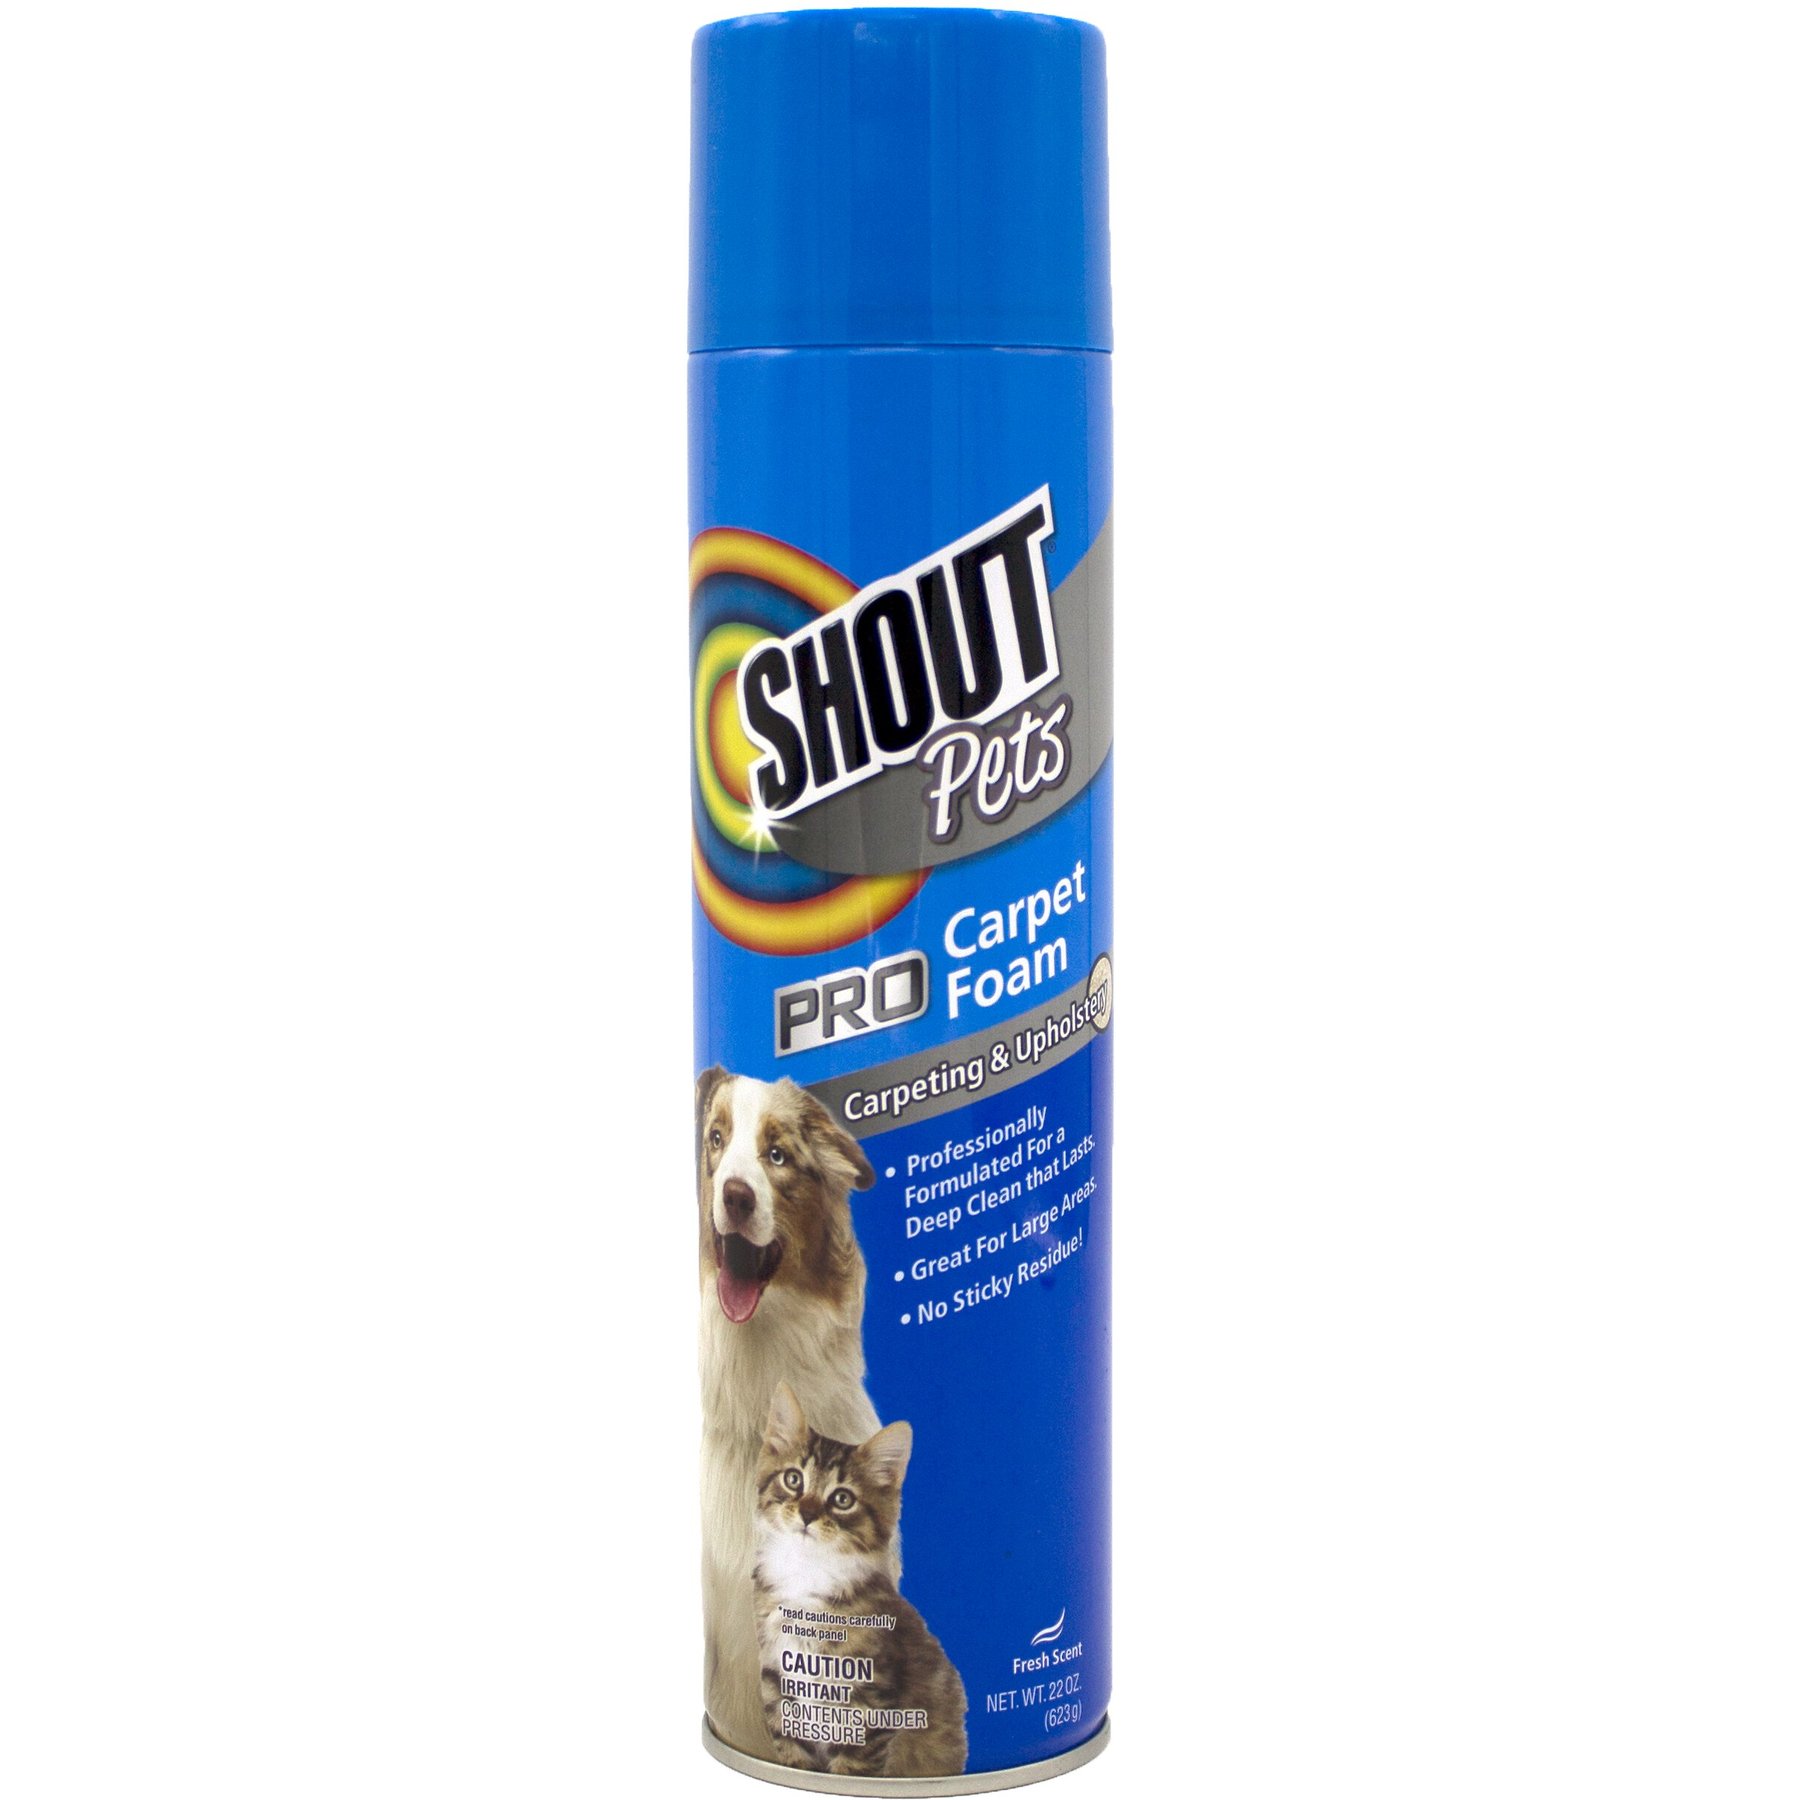 Shout for Pets Pro Carpet Foam, 22 oz.